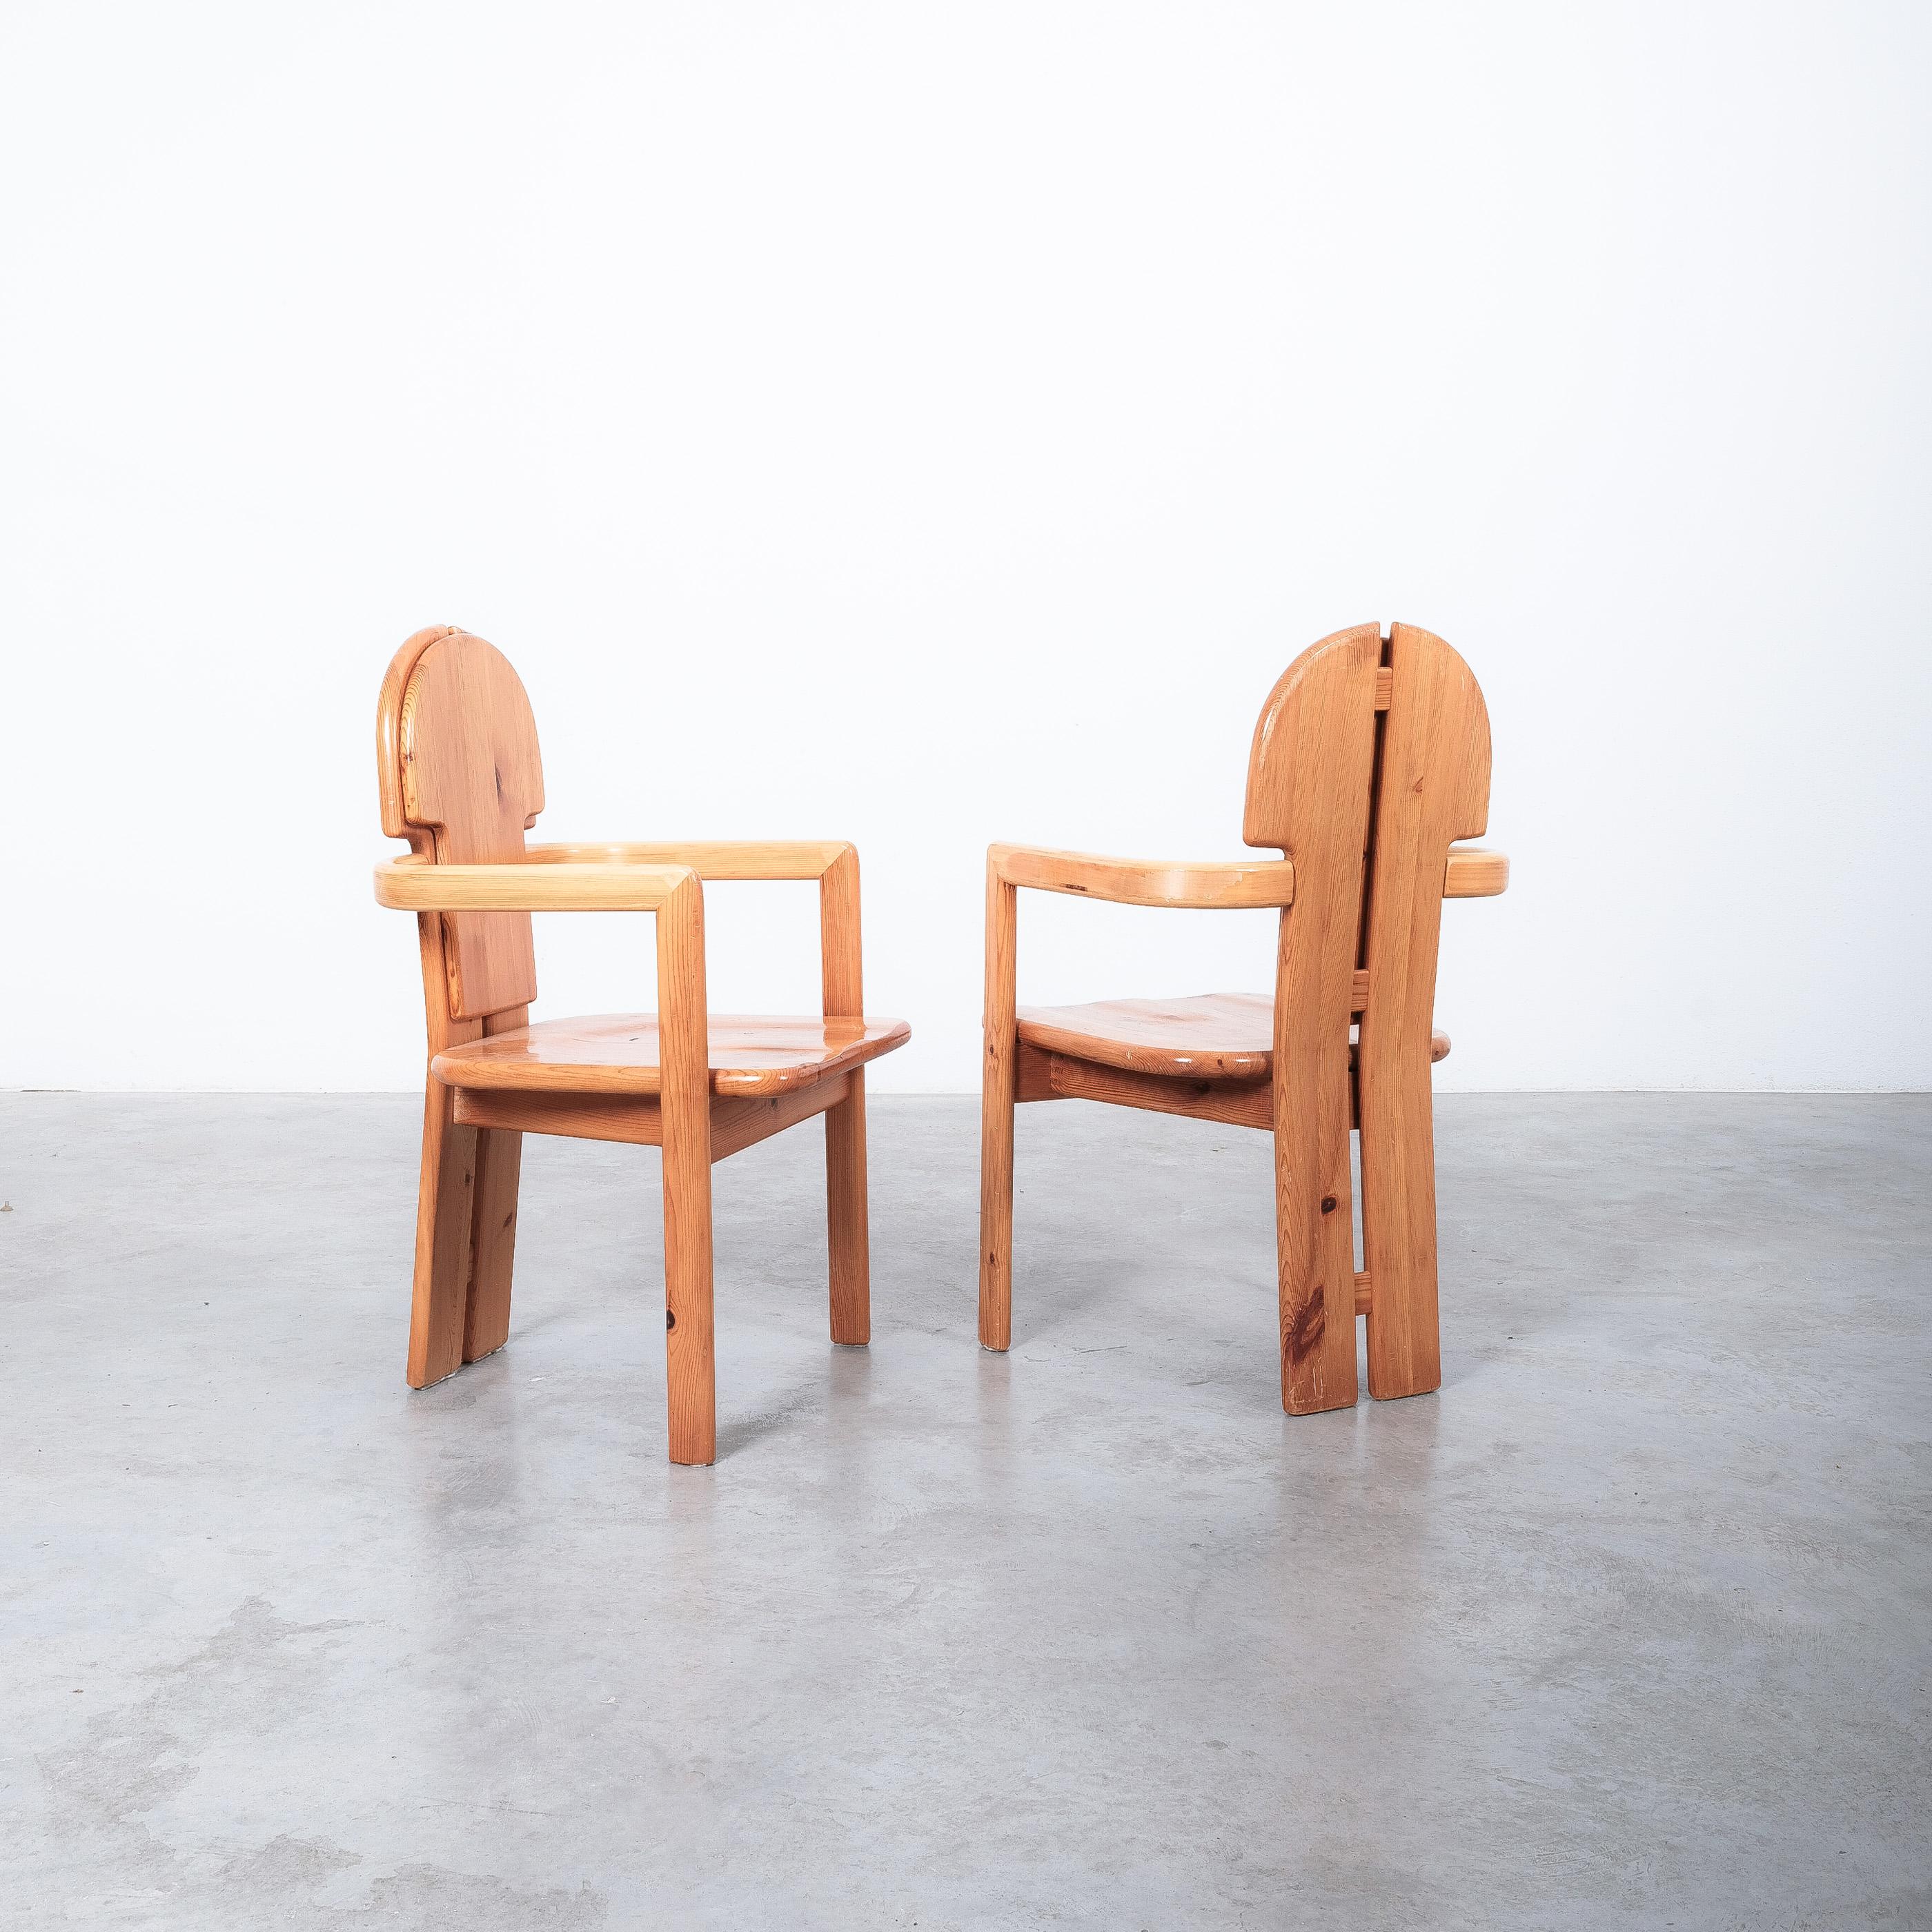 Ein Paar Sessel aus Kiefernholz des dänischen Architekten Rainer Daumiller, hergestellt vom Sägewerk Hirtshals in den 1970er Jahren.

Verkauft als 2er-Set, wir haben noch ein weiteres Set von sechs Daumiller-Stühlen verfügbar, die mit diesen